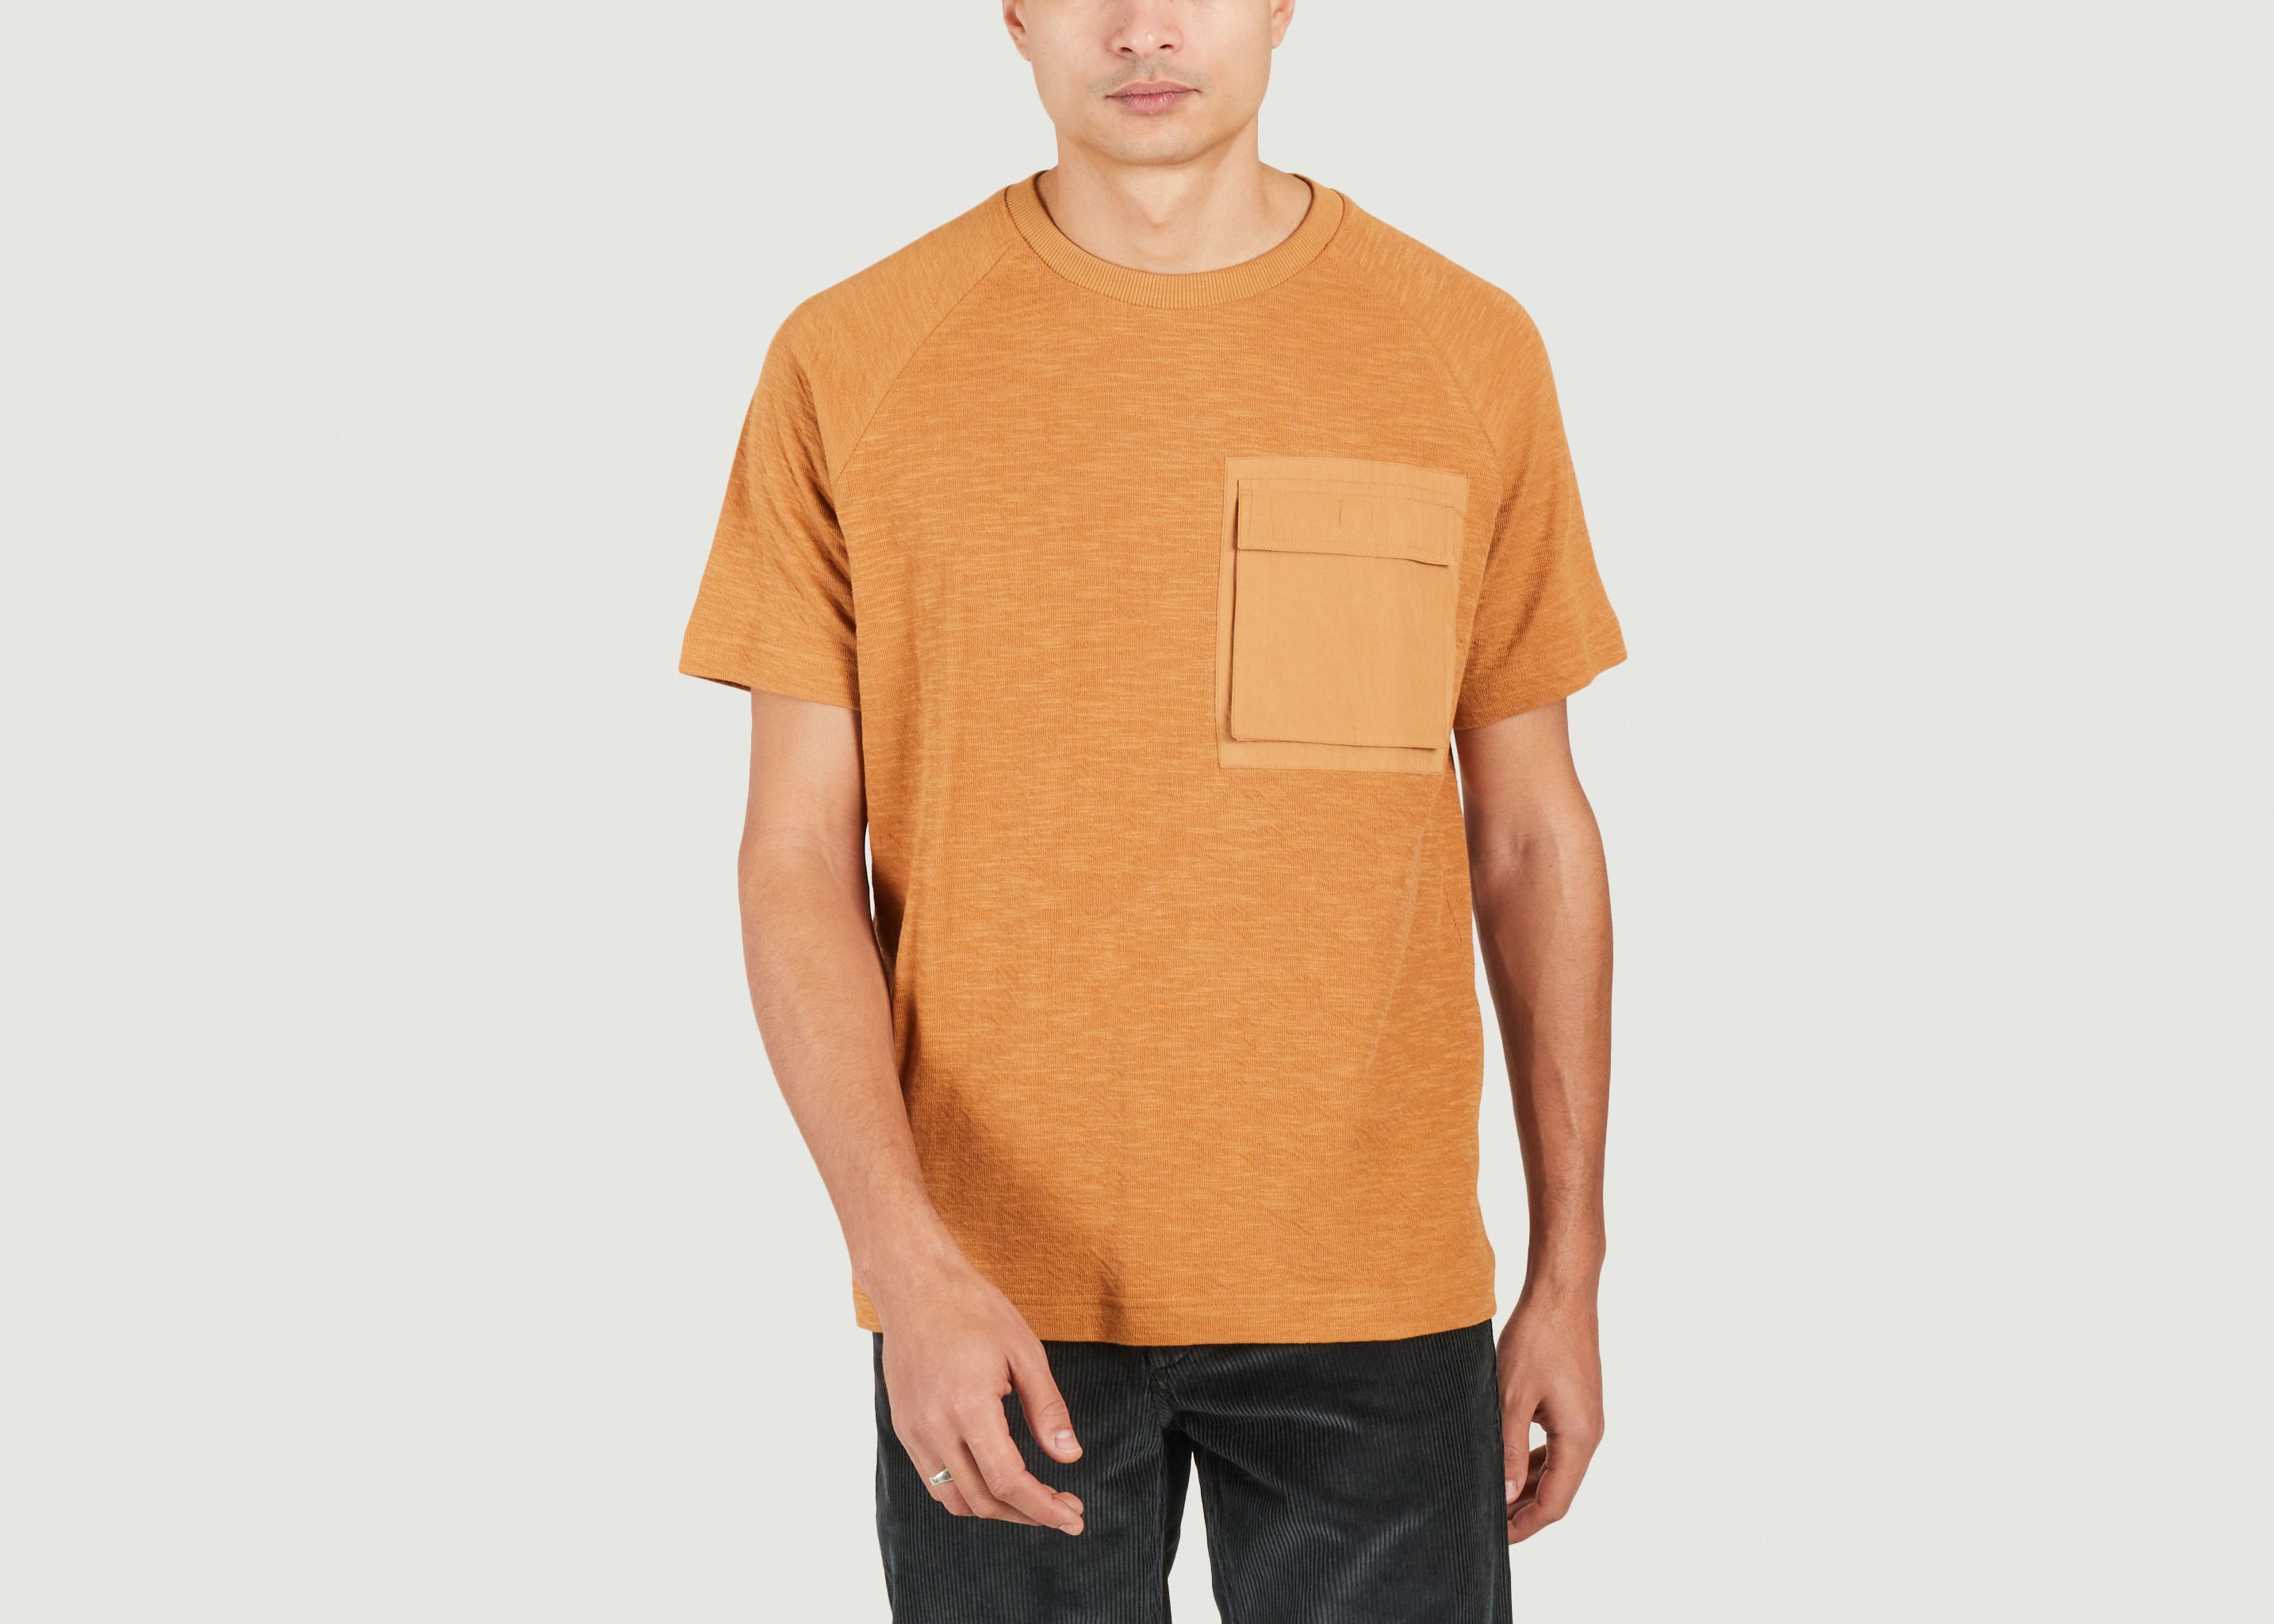 Teeshirt oversize à manches courtes  - KCA